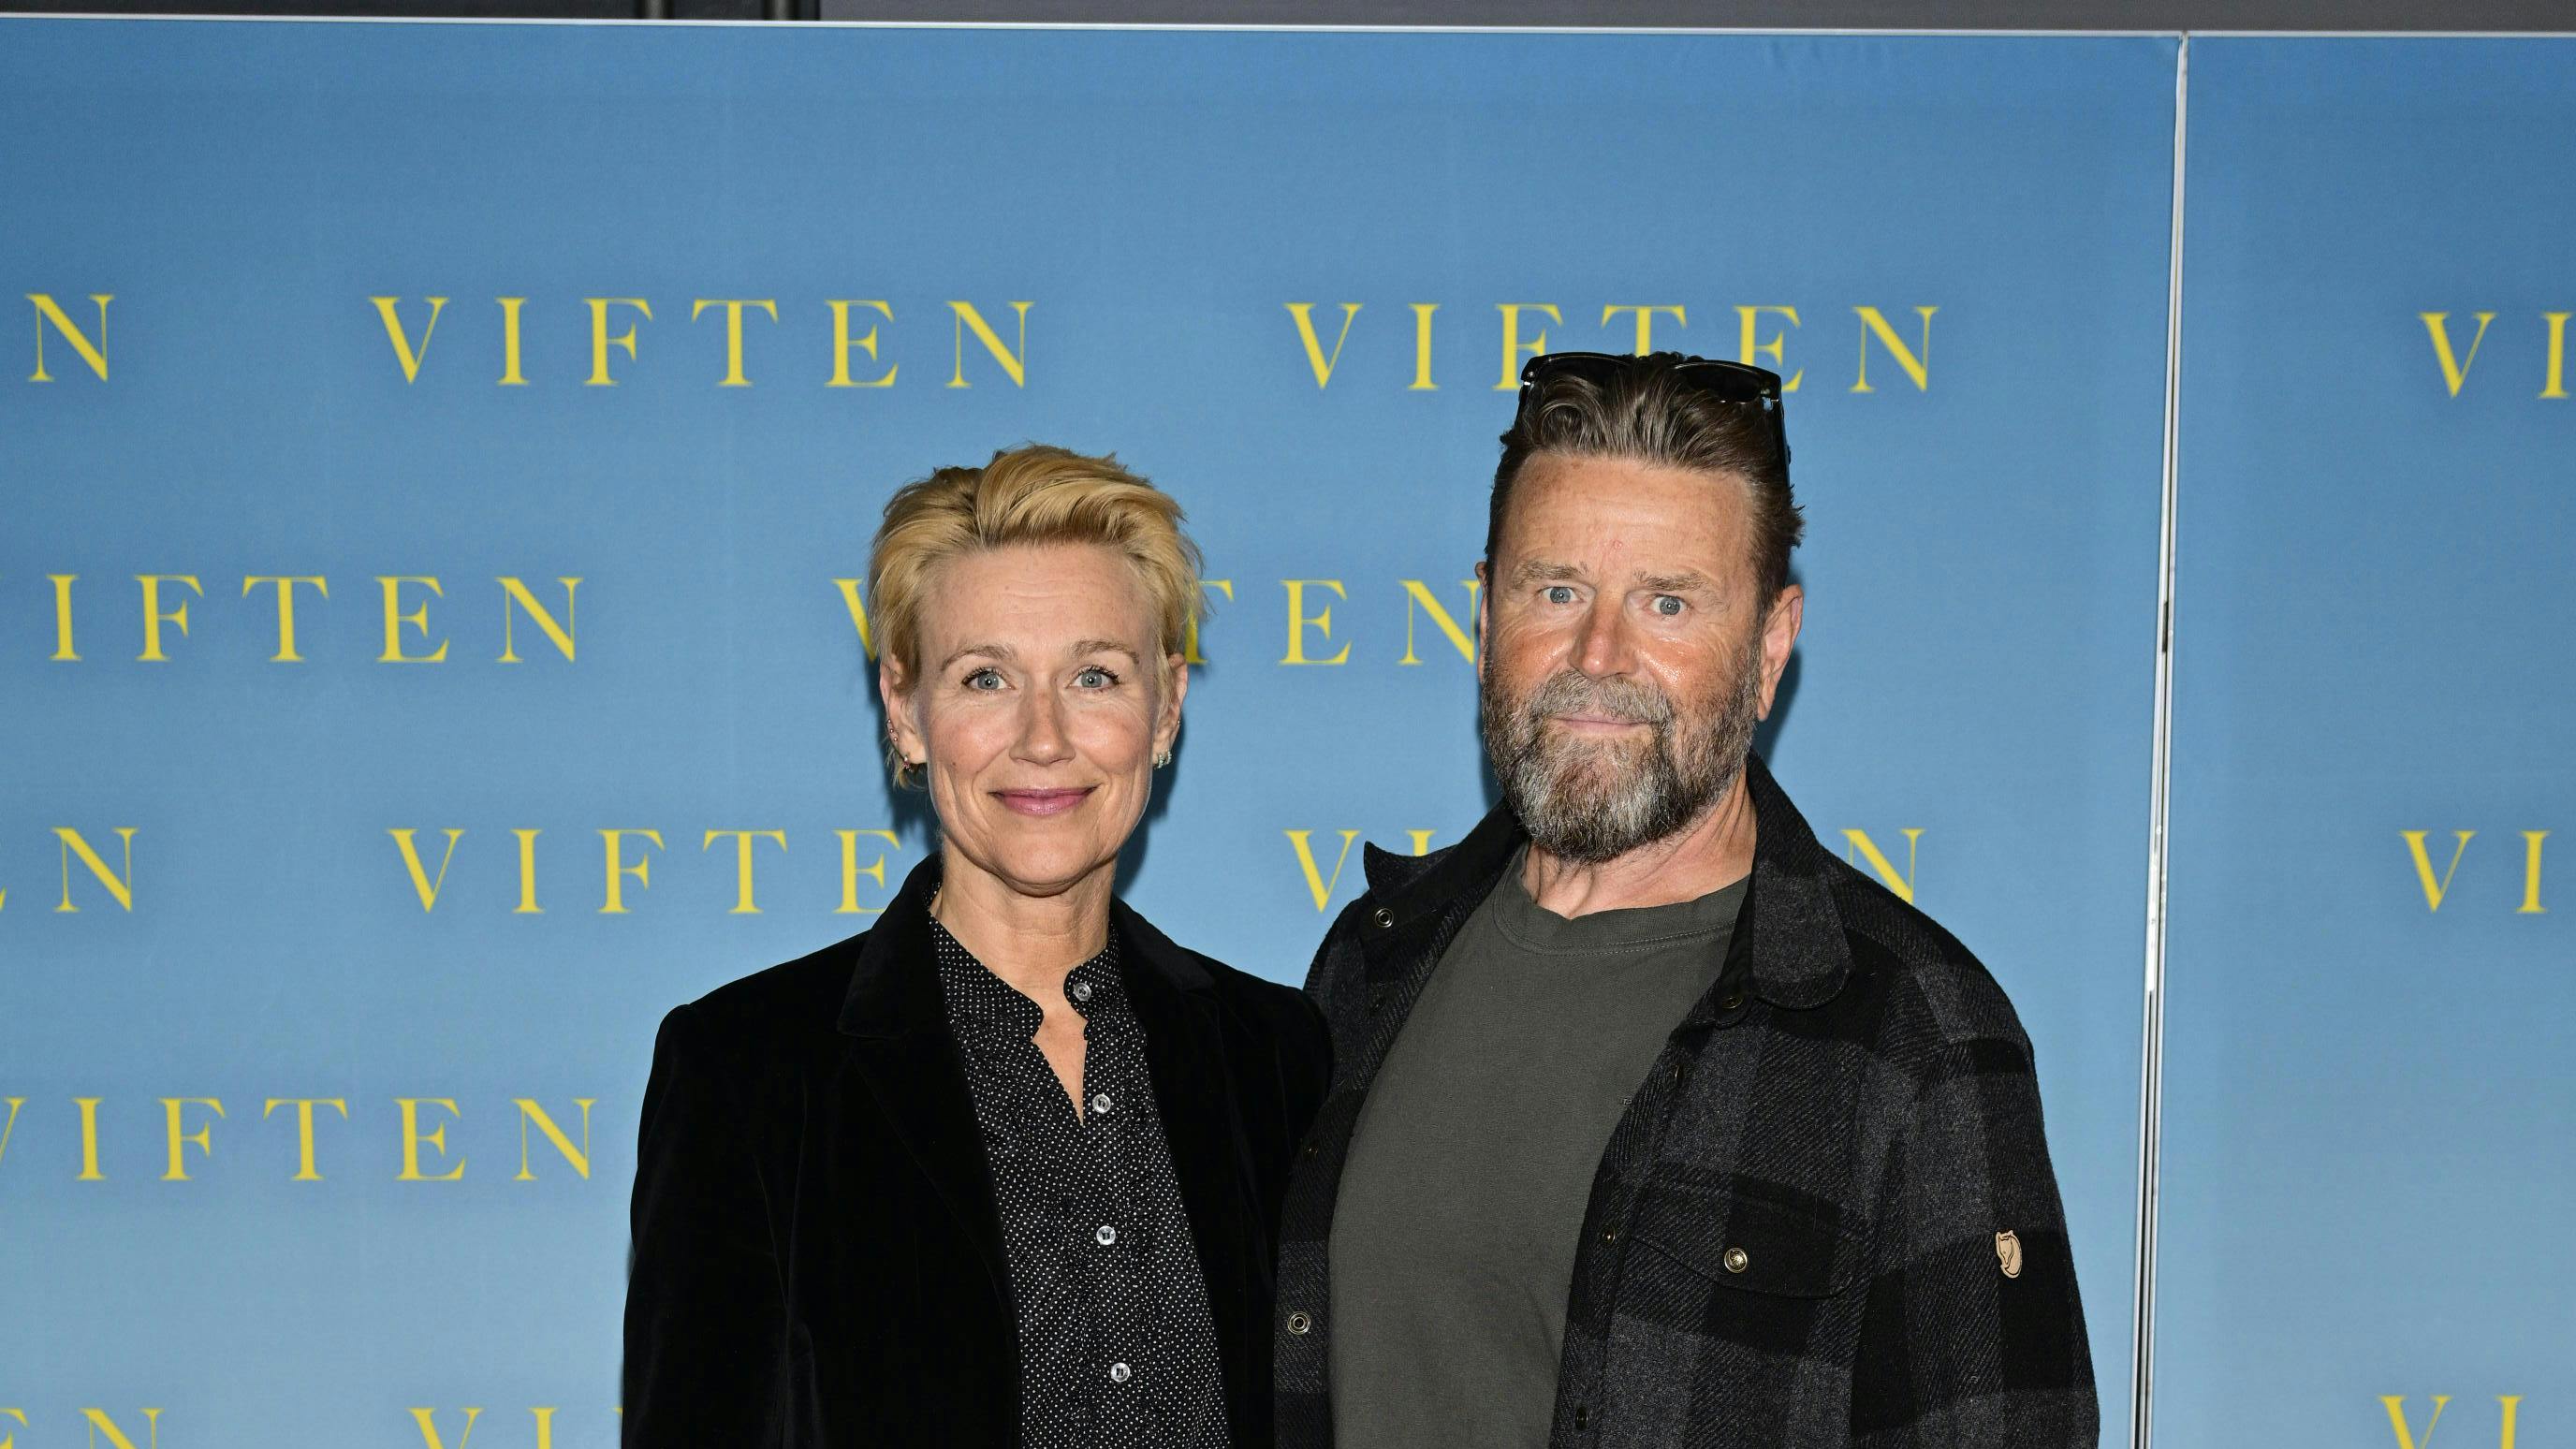 Skuespillerparret Xenia Lach-Nielsen og Peter Gantzler starter ugen med en tur i biffen i anledning af premieren på "Viften", som Peter har en rolle i.&nbsp;
